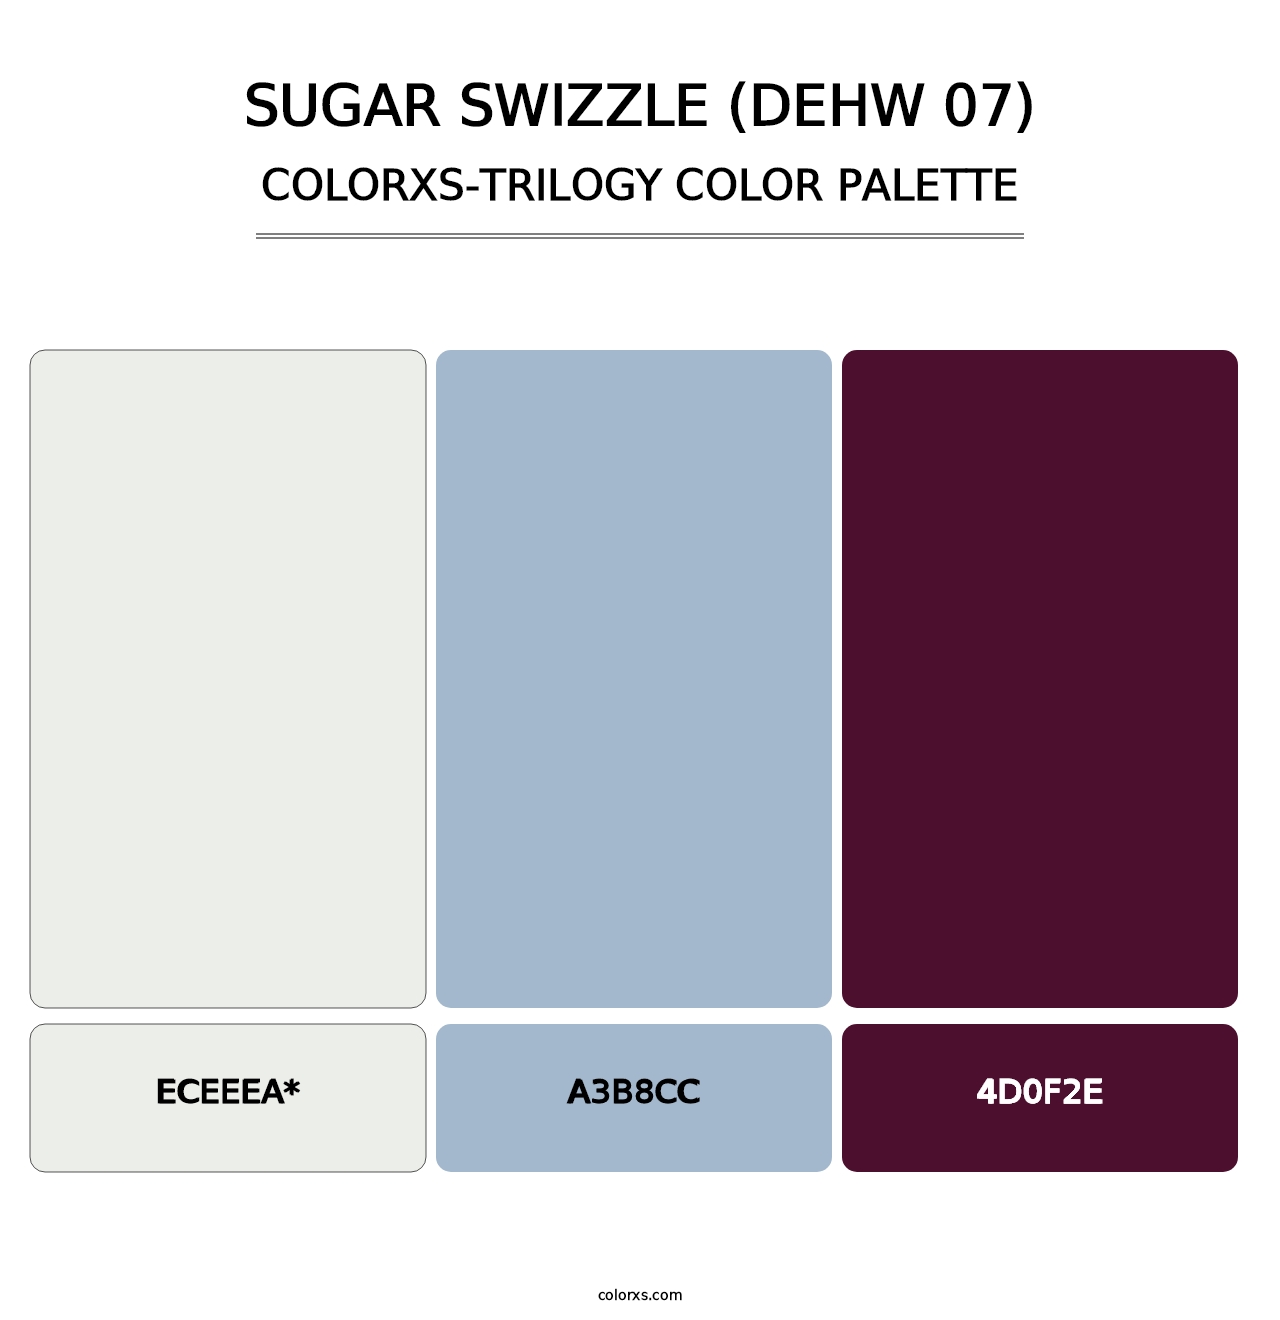 Sugar Swizzle (DEHW 07) - Colorxs Trilogy Palette